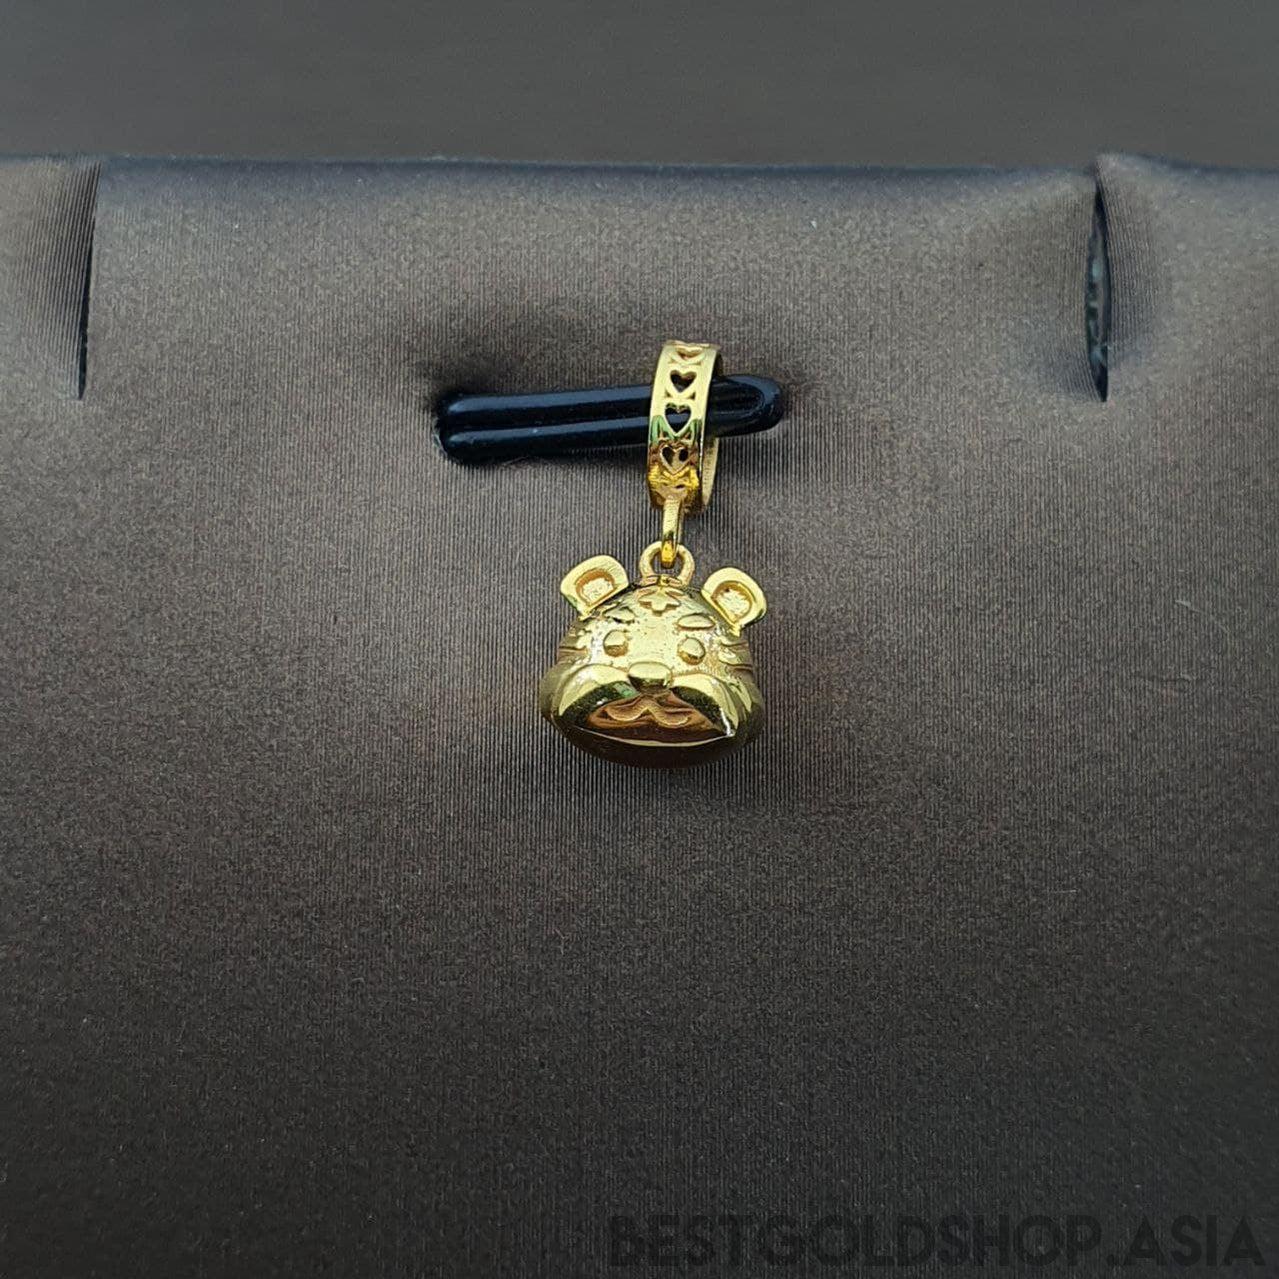 22k / 916 Gold Tiger Charm / Pendant-Charms & Pendants-Best Gold Shop